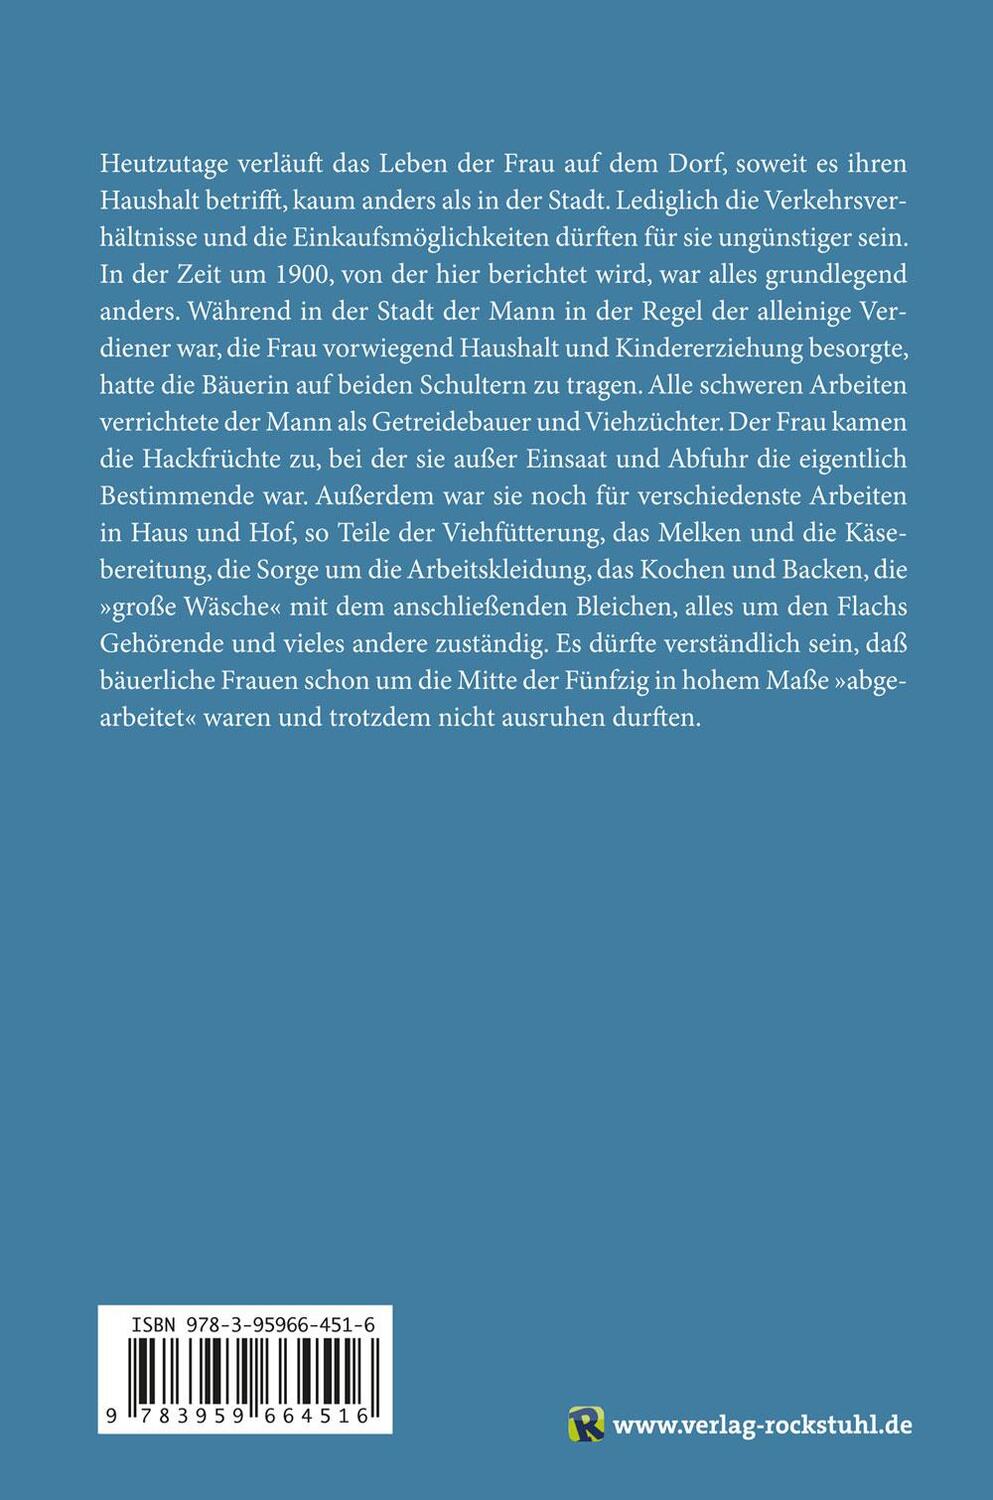 Rückseite: 9783959664516 | Hausarbeit der Bauersfrau | Bäuerliches Leben um 1900 - Band 5 | Röth